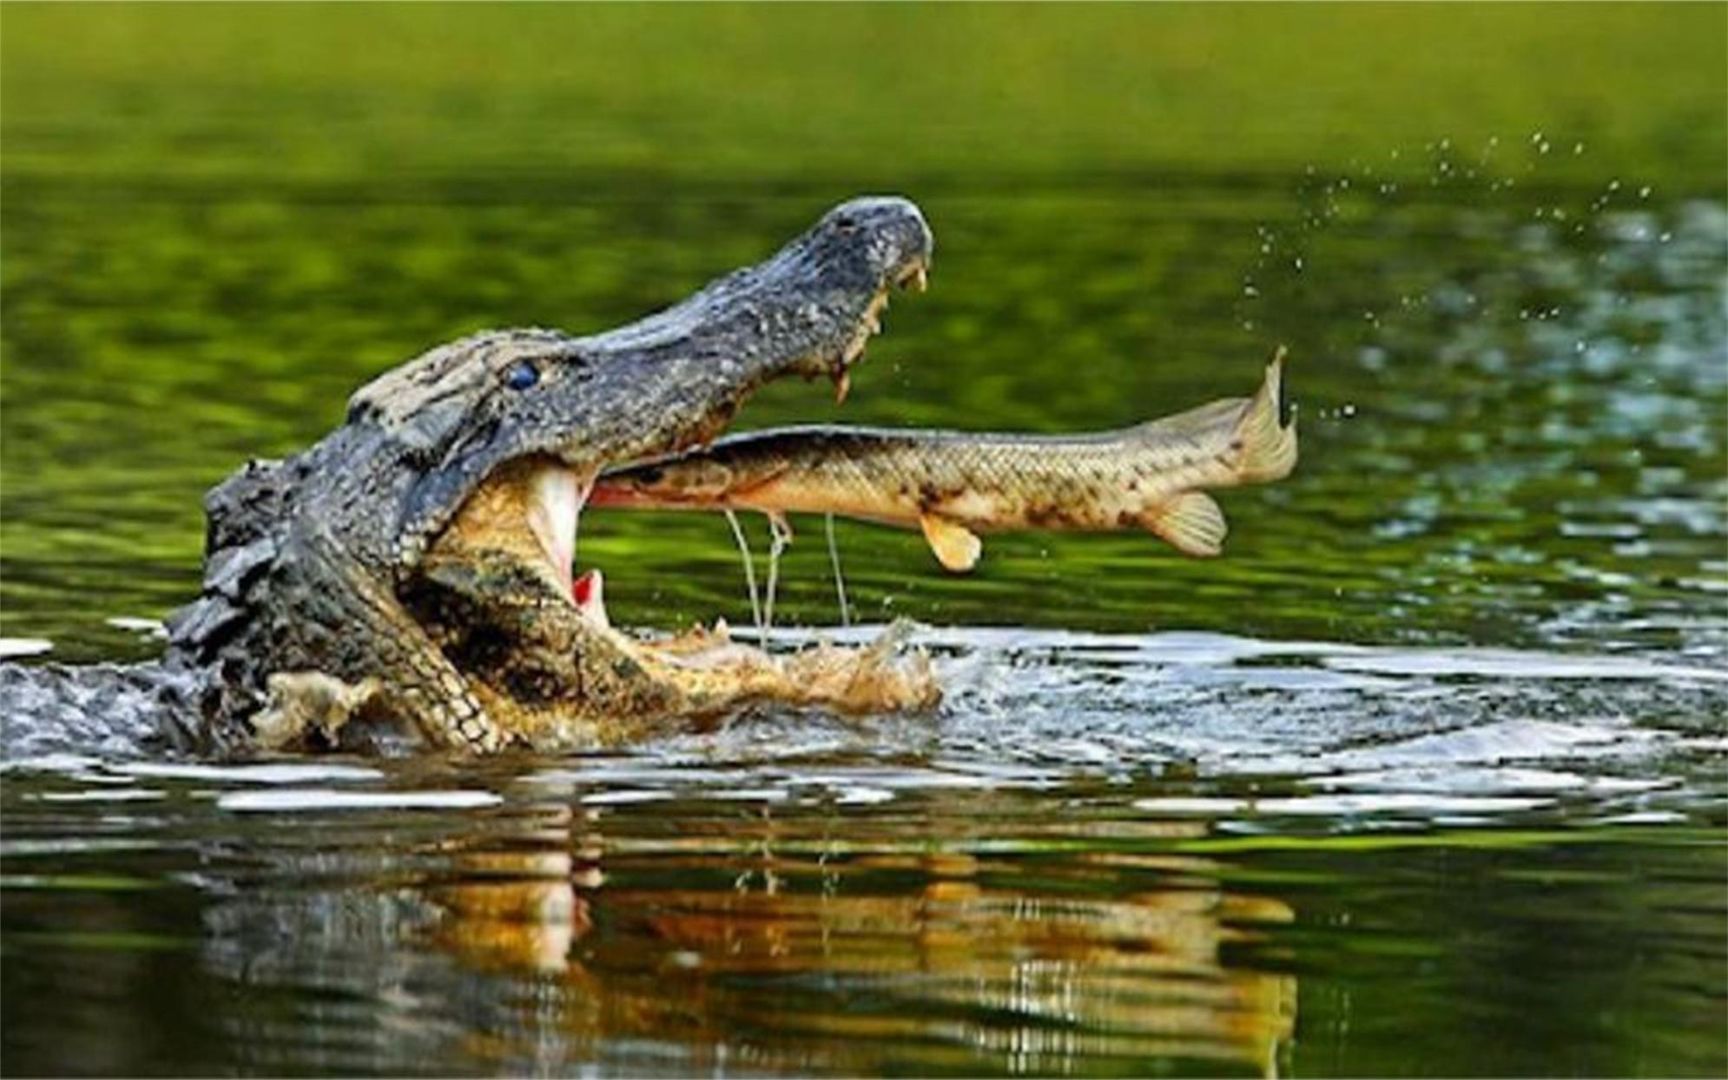 凶狠的鳄鱼也有天敌,吃鳄鱼就像吃棉花糖,5分钟就能吃干净